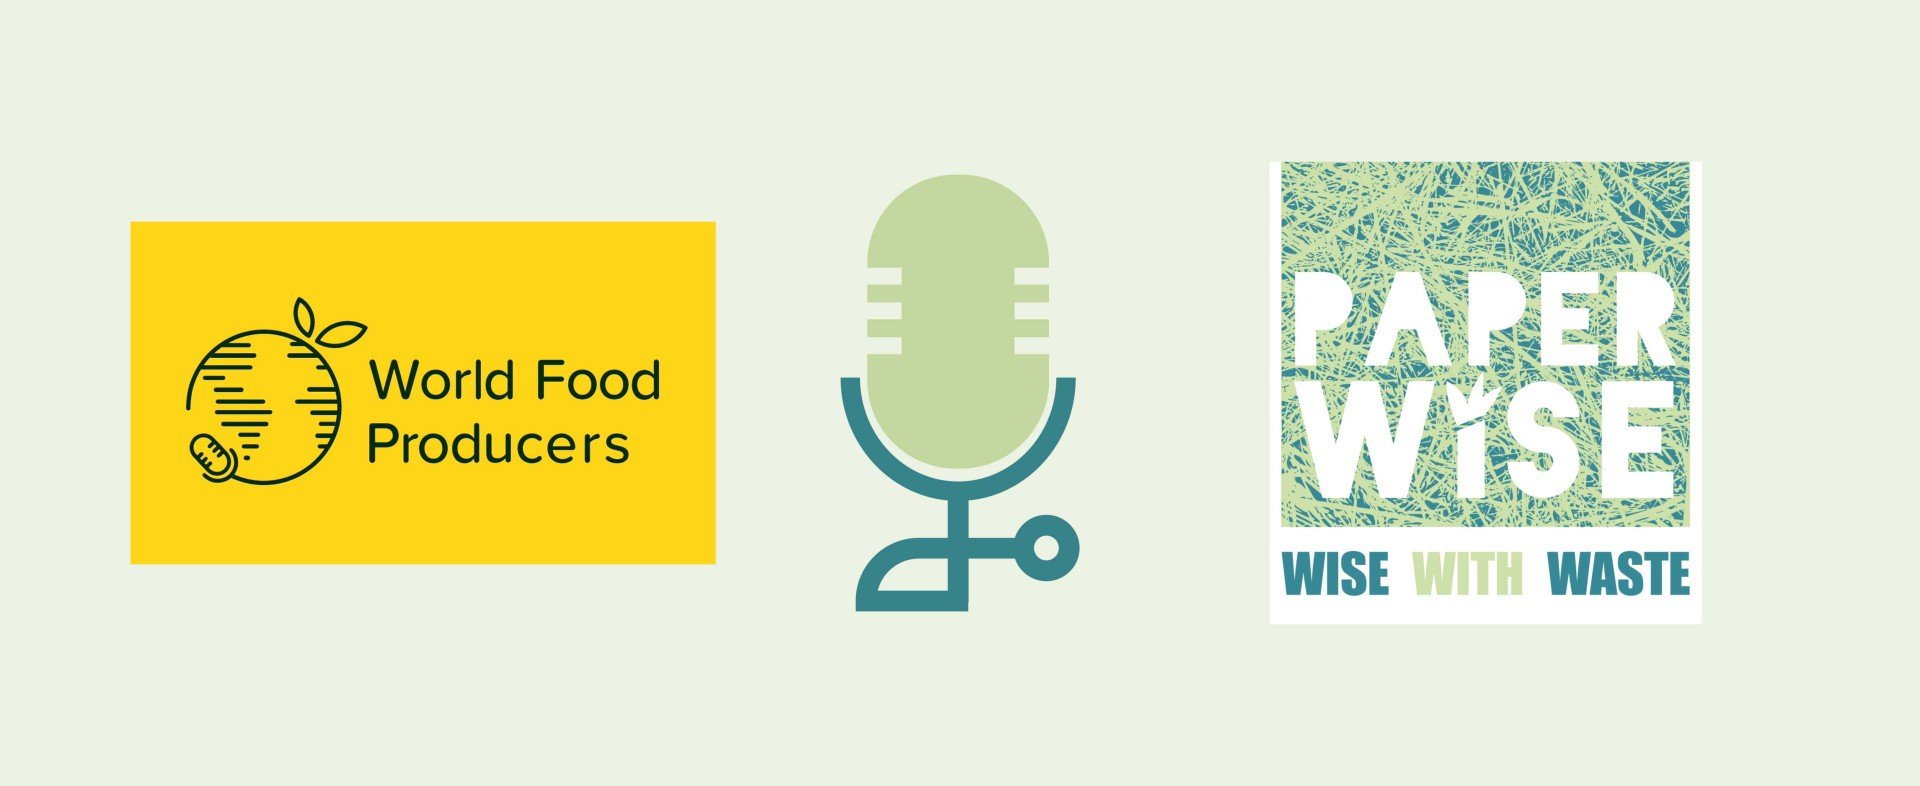 World Food Producers interviewer Peter van Rosmalen, grundlægger af PaperWise